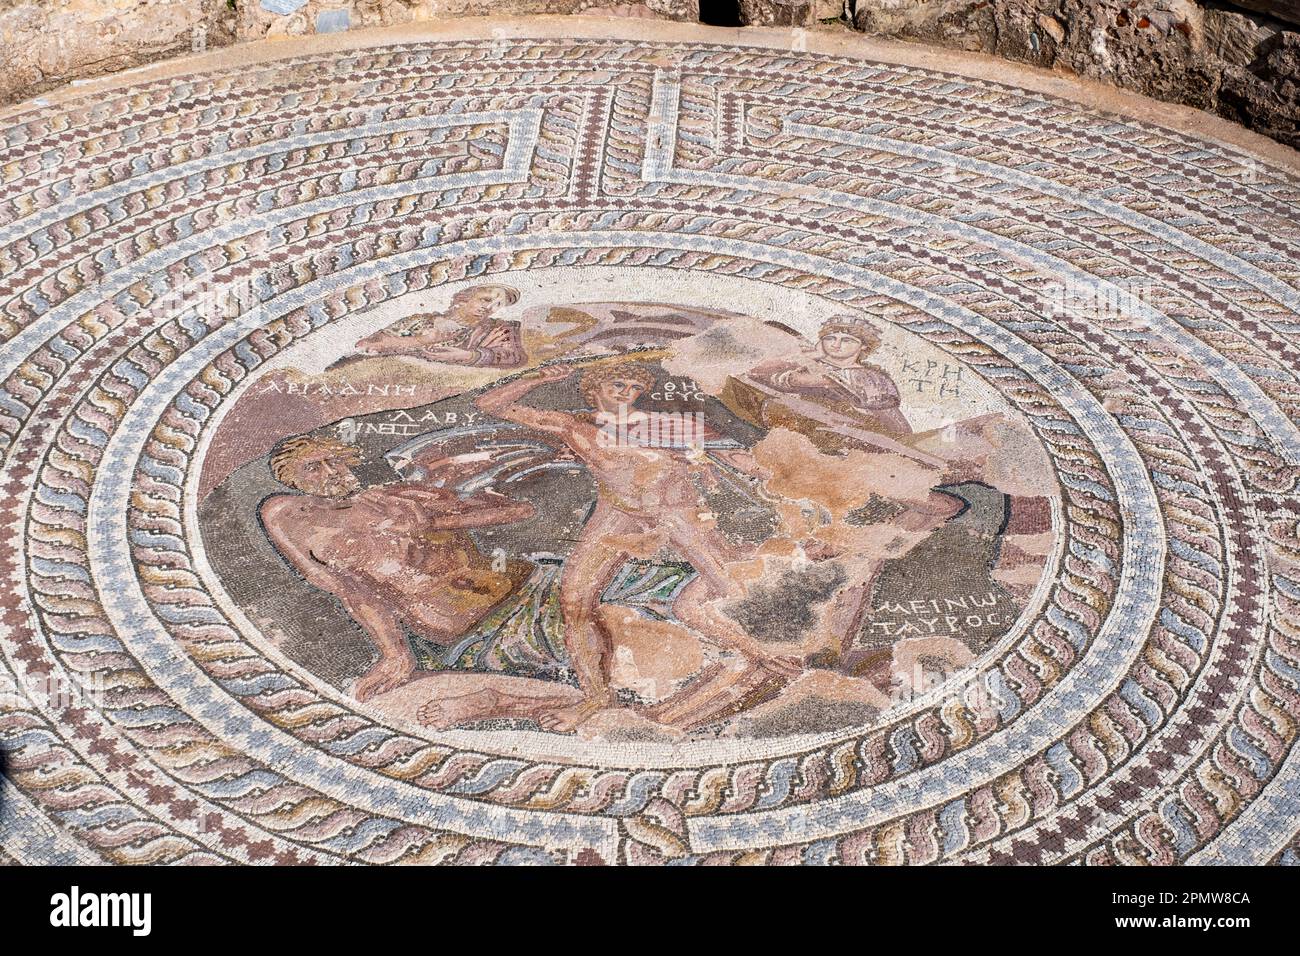 La Maison d'Aion, Paphos, Chypre : sol en mosaïque représenté dans un médaillon, duel mythique entre Theseus et le Minotaure dans le labyrinthe de Crète. Banque D'Images